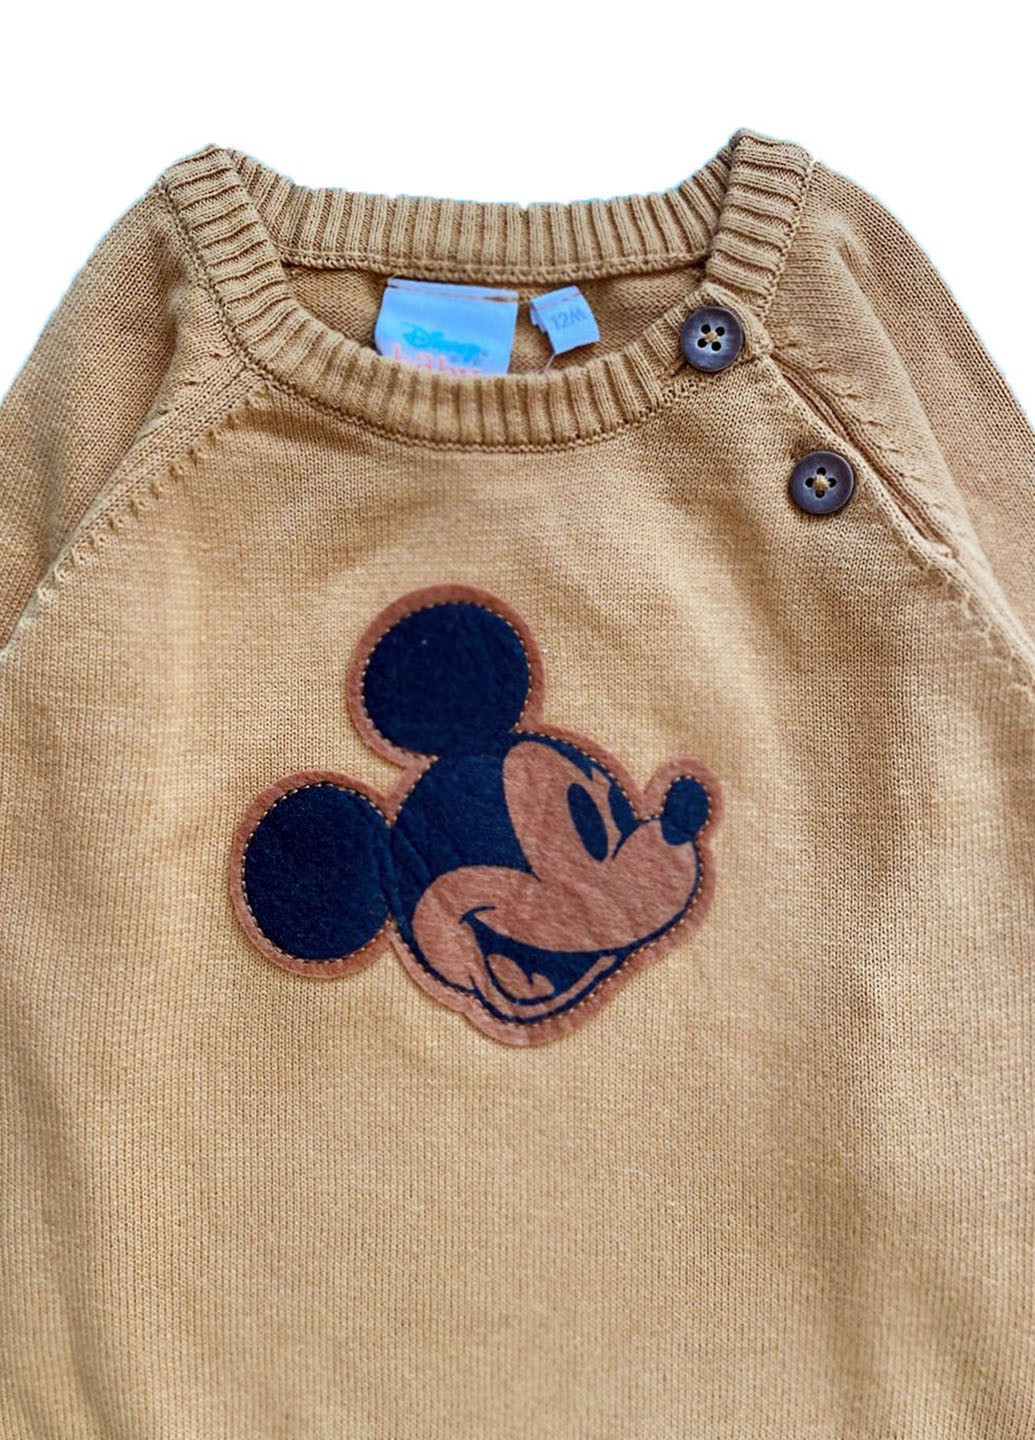 Горчичный демисезонный свитер Disney